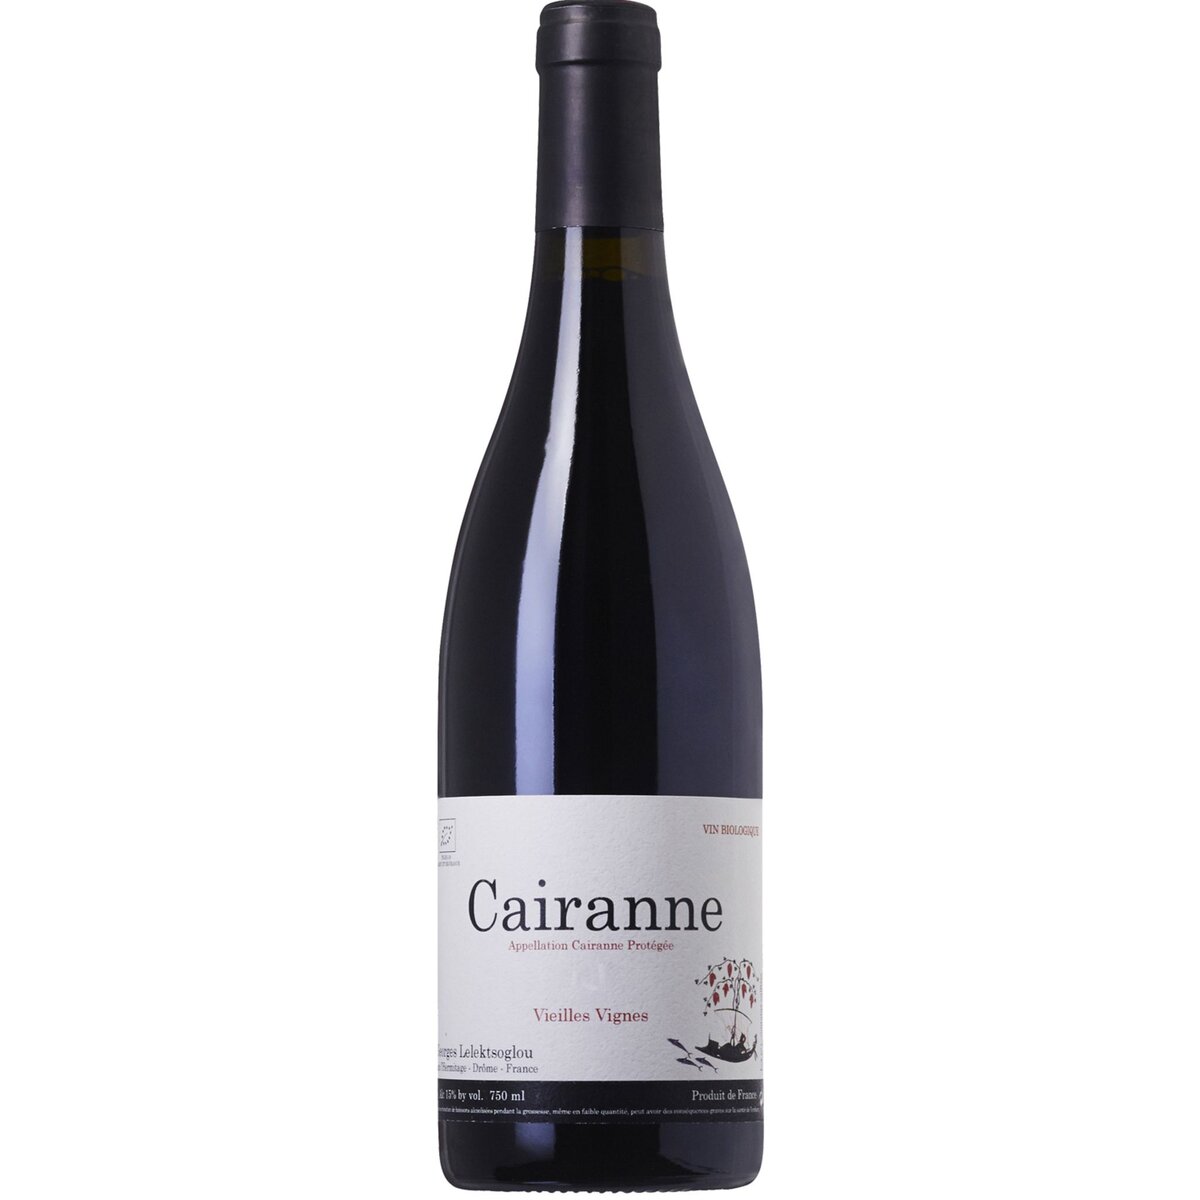 Vin rouge AOP Cairanne Bio Vieilles Vignes Georges Leleksoglou 2016 75cl